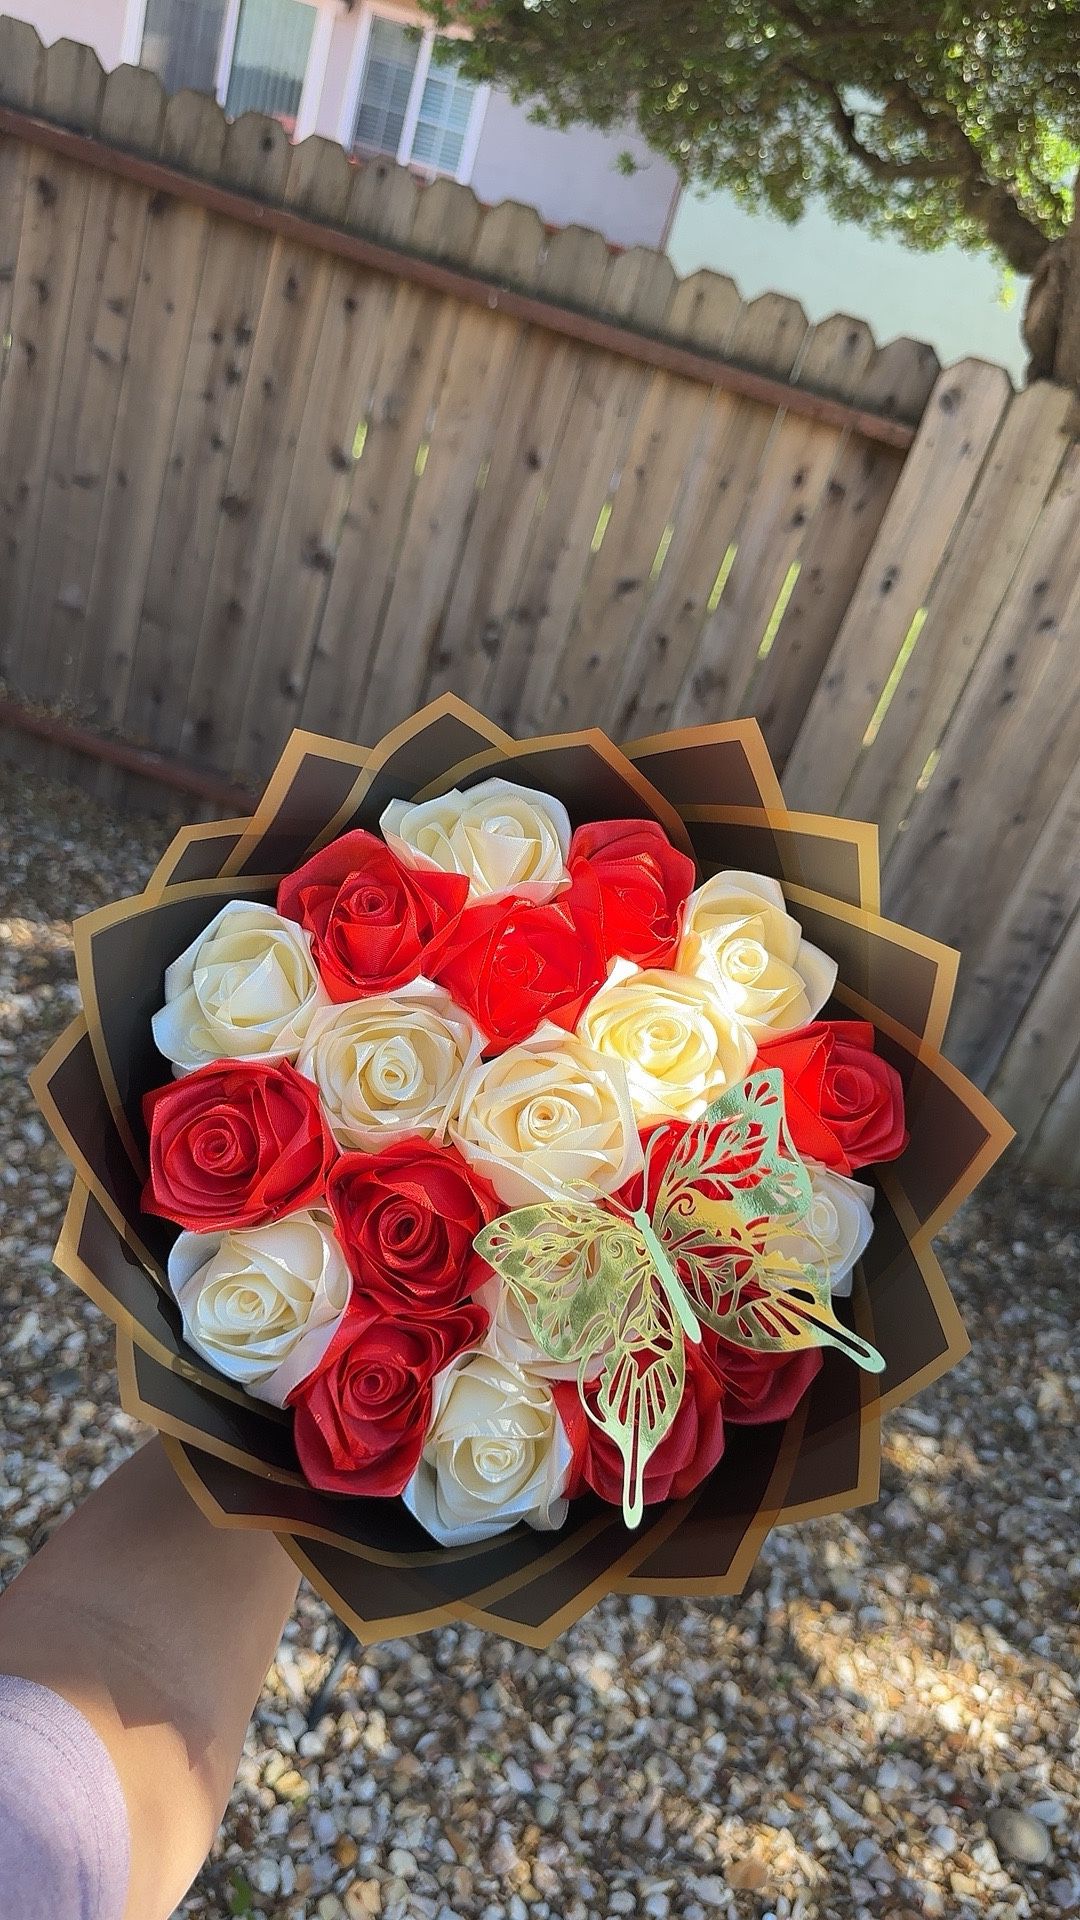 Eternal Rose Bouquet 